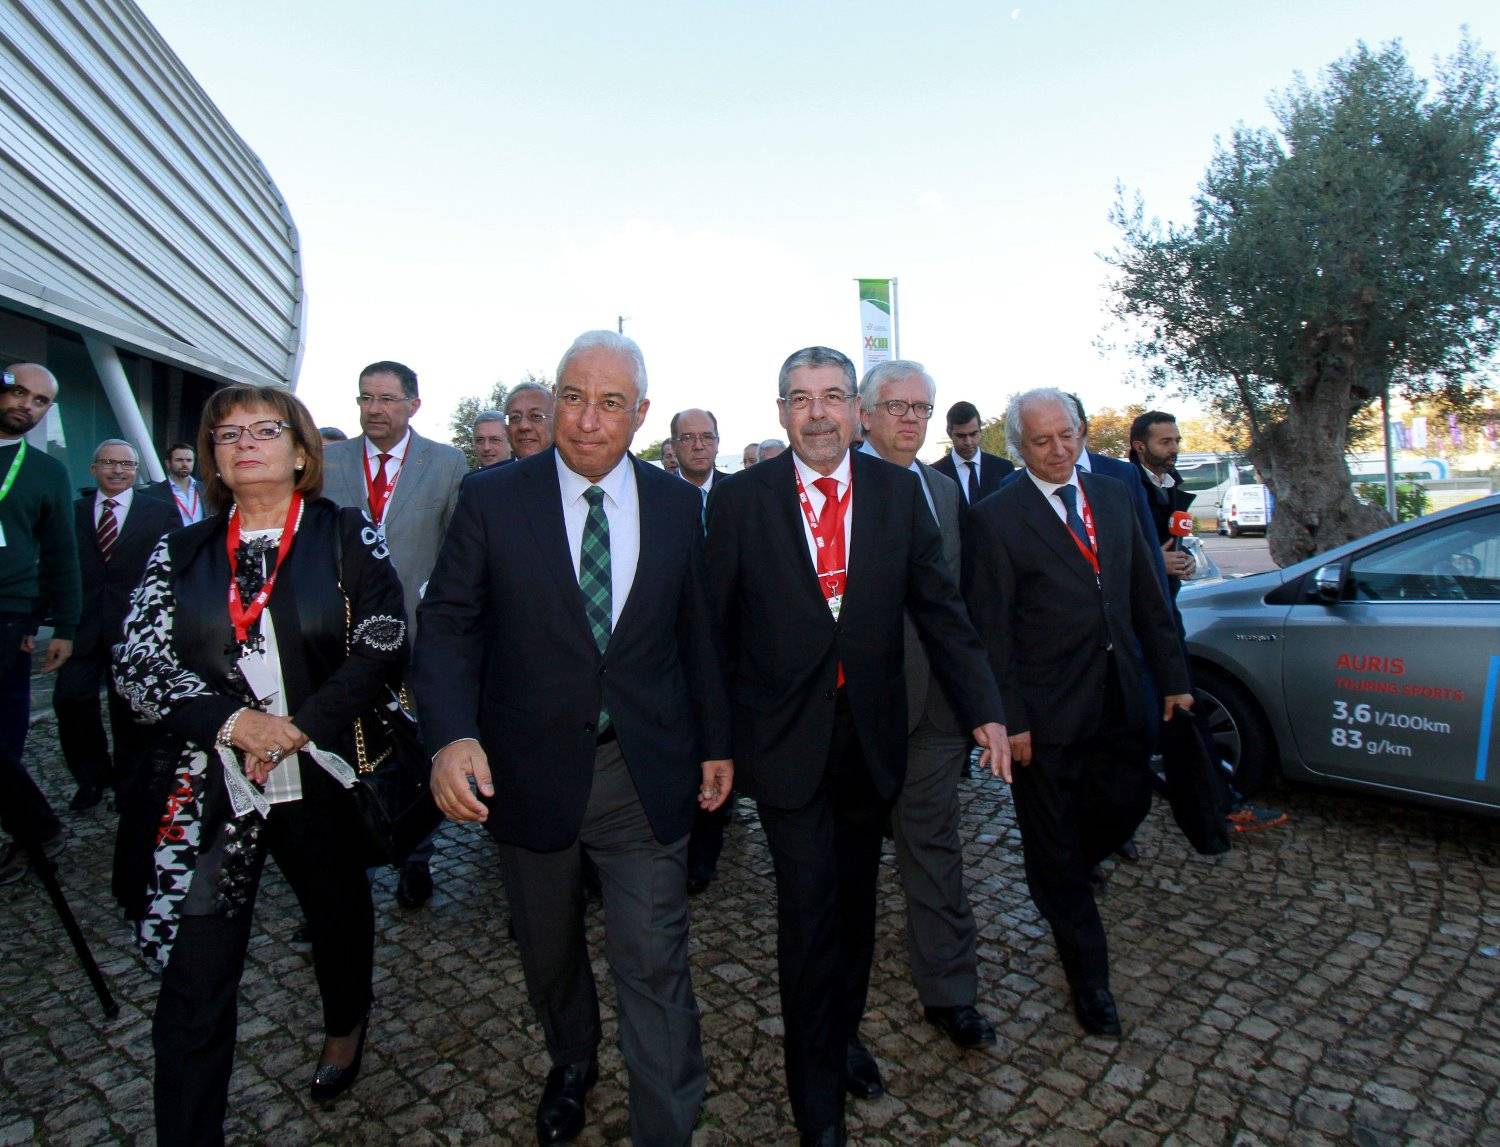 (Português) ANMP elegeu novos órgãos no Congresso Nacional em Portimão 22